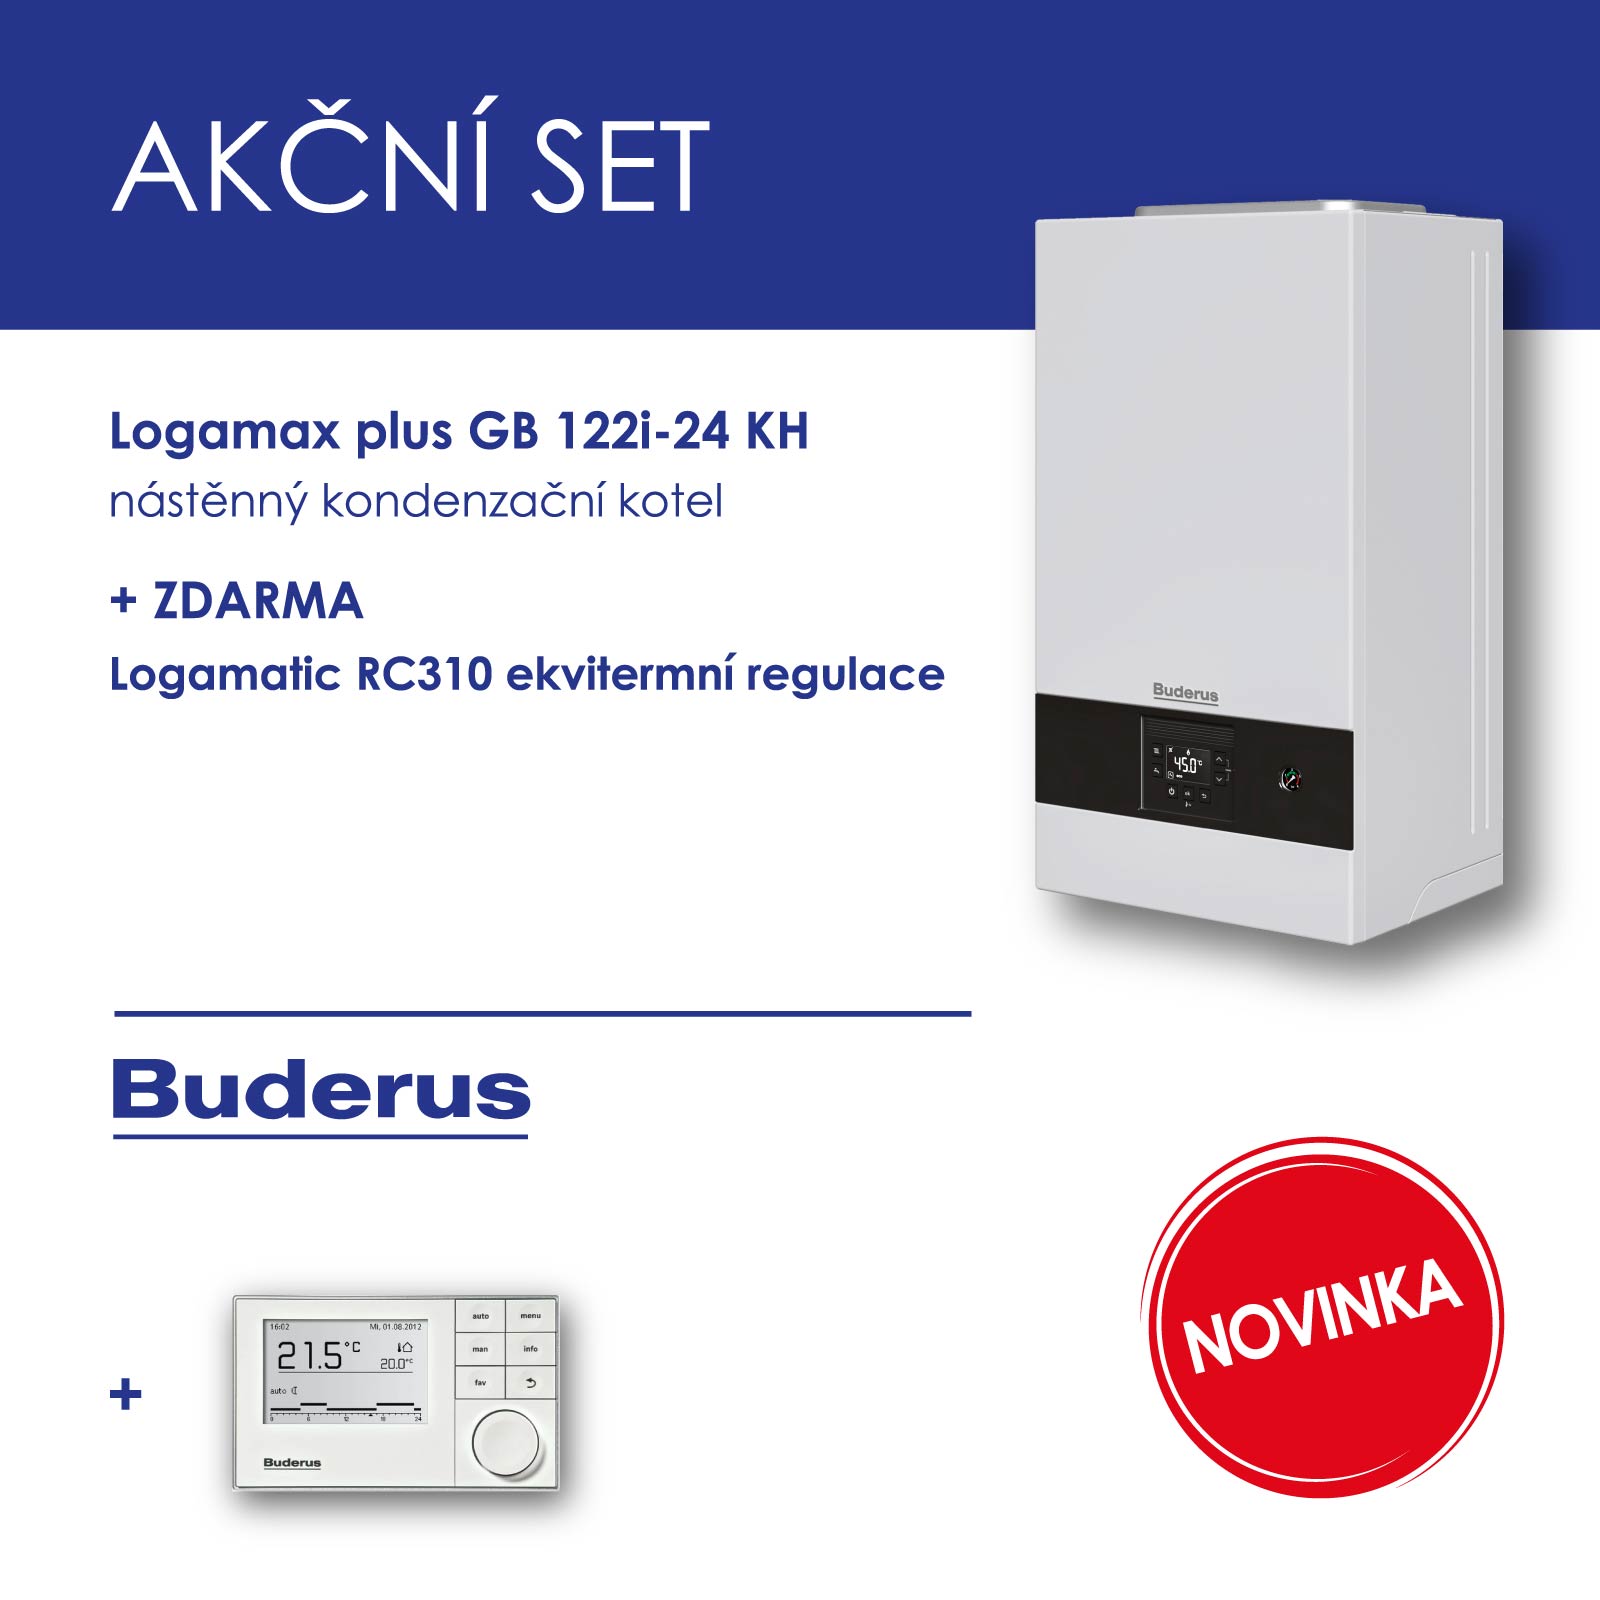 BUDERUS GB122i-24 KH nástěnný plynový kondenzační kotel,kombi + RC 310 ekvitermní regulace